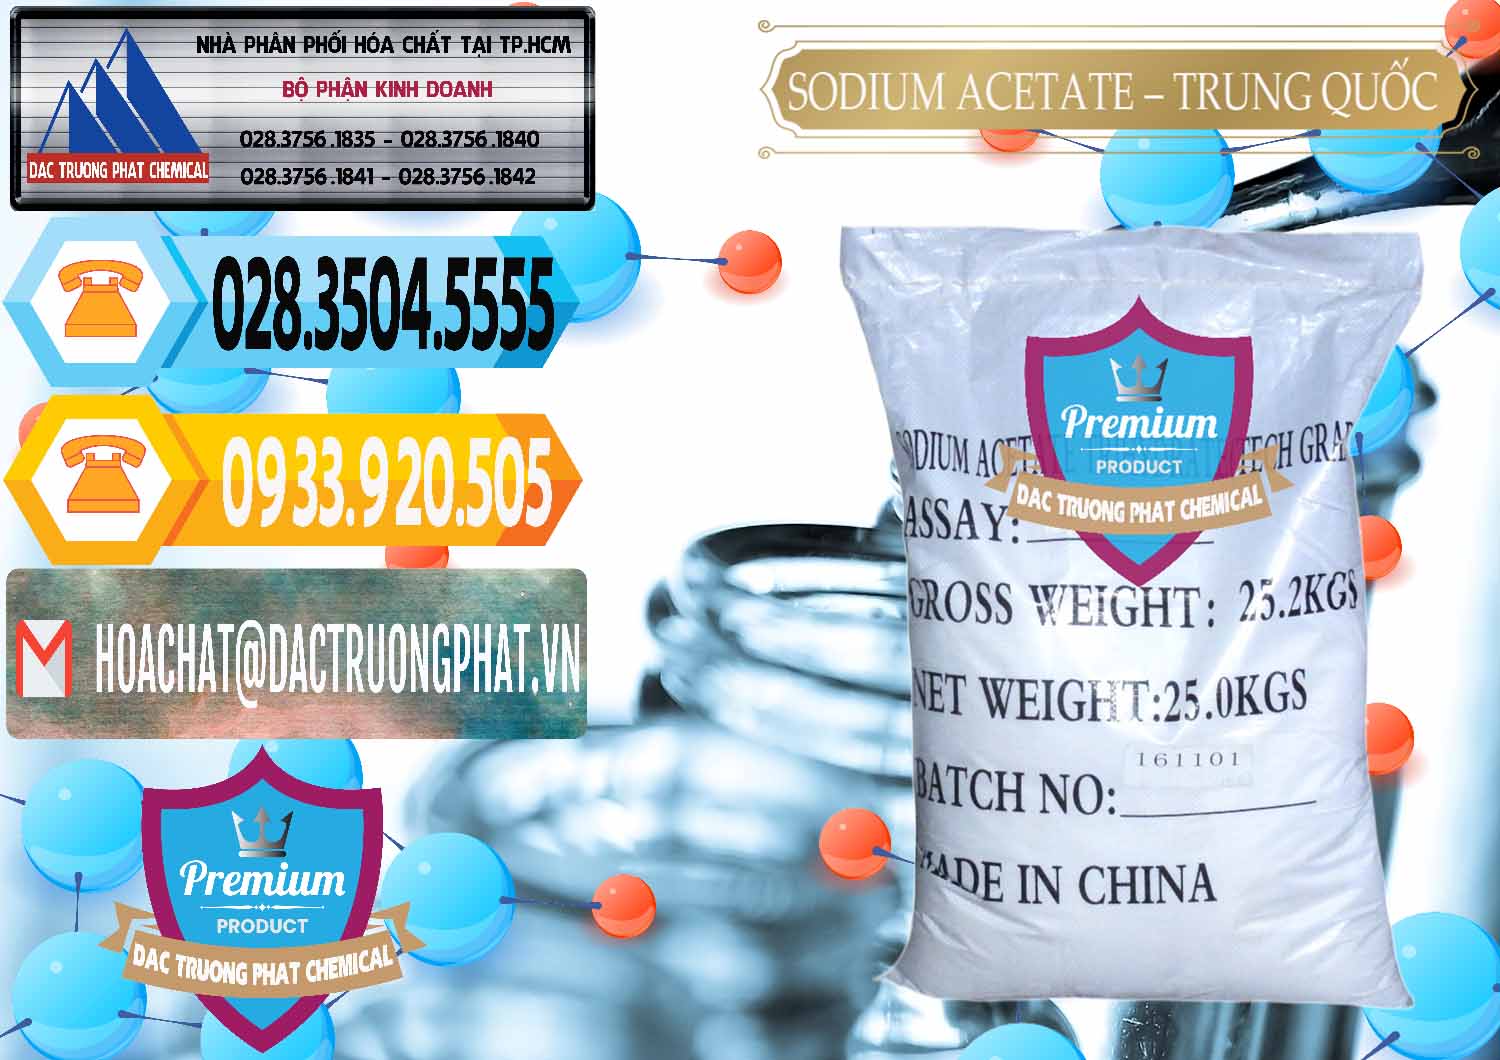 Cty cung cấp và bán Sodium Acetate - Natri Acetate Trung Quốc China - 0134 - Nhà cung cấp & phân phối hóa chất tại TP.HCM - hoachattayrua.net